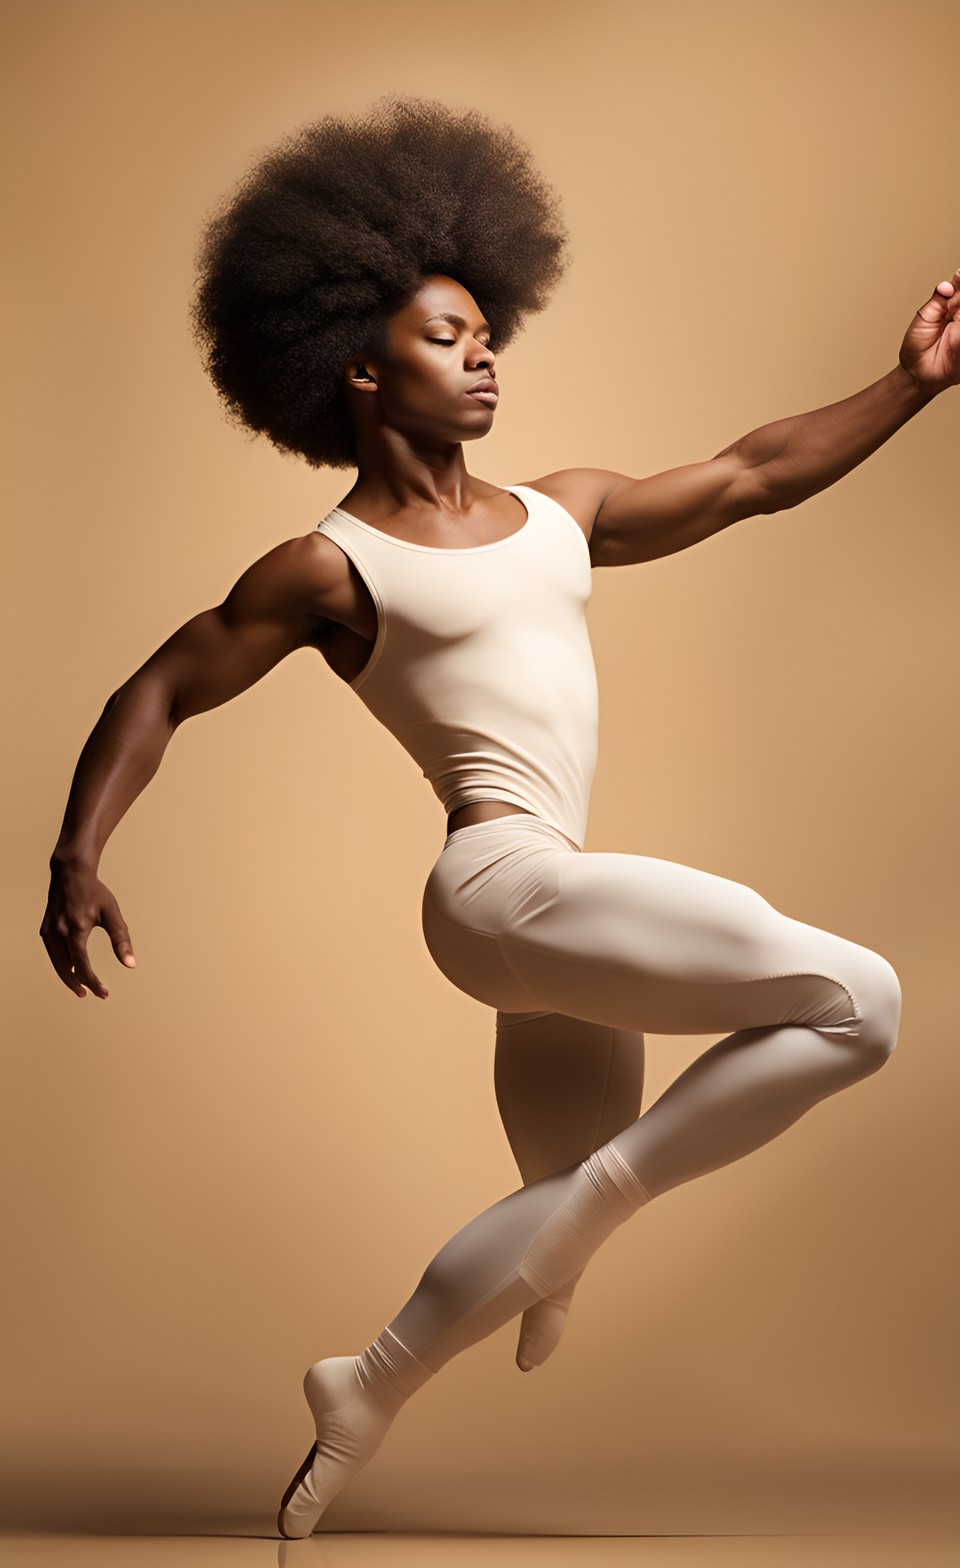 Jamaican magical ballet dancer Jamai211